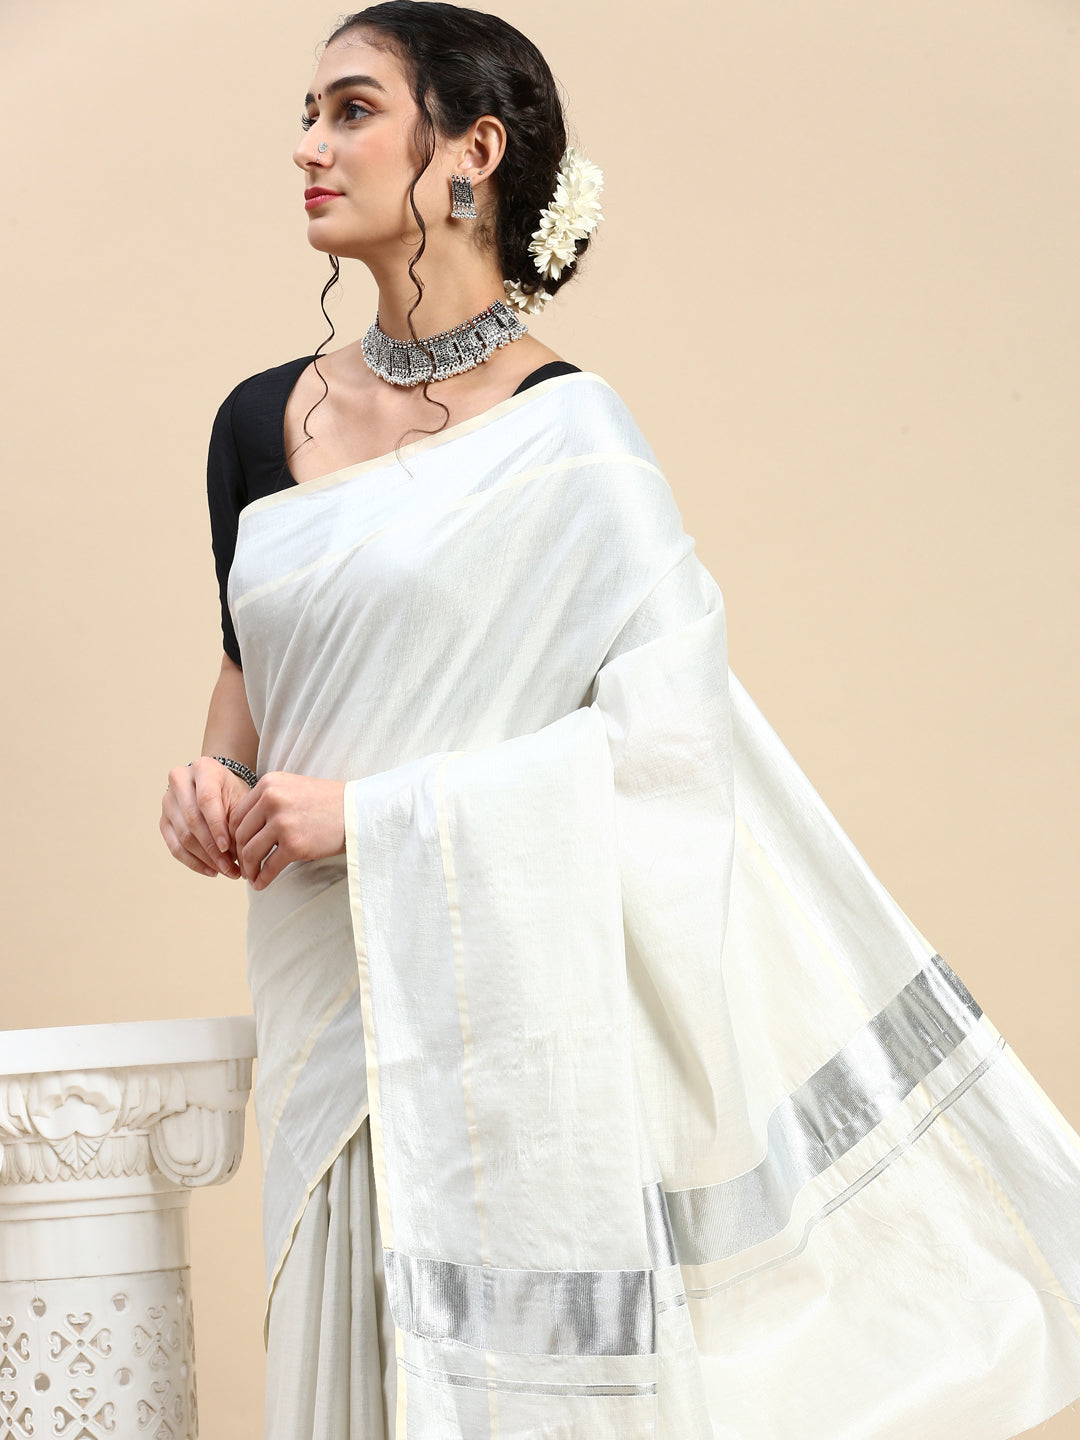 New Kerala kasavu cotton saree draping | Plain kasavu cotton saree draping  to traditional look sari - YouTube